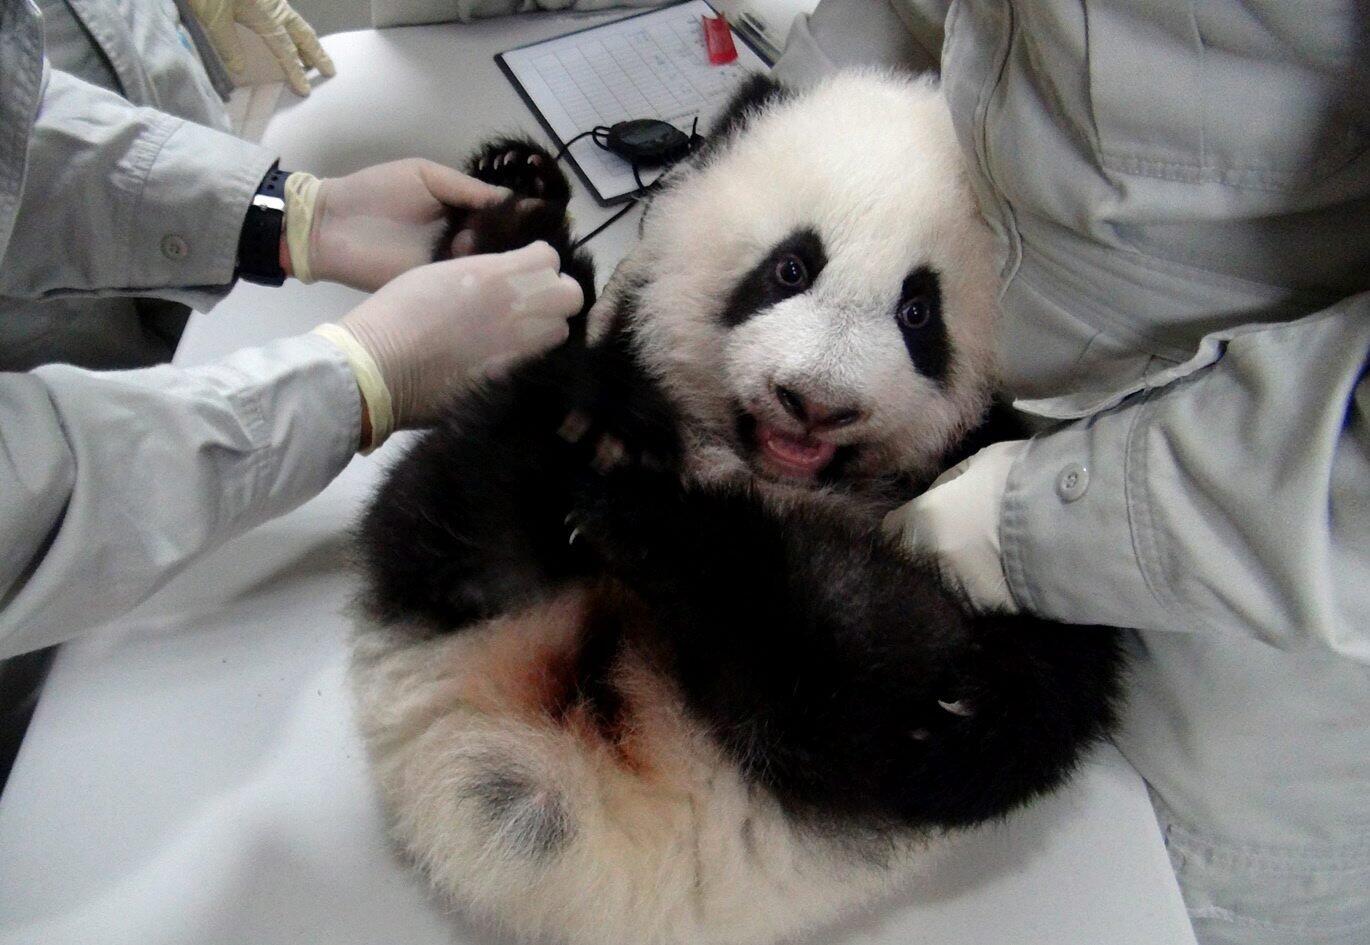 Taipei Zoo panda cub Yuan Zai